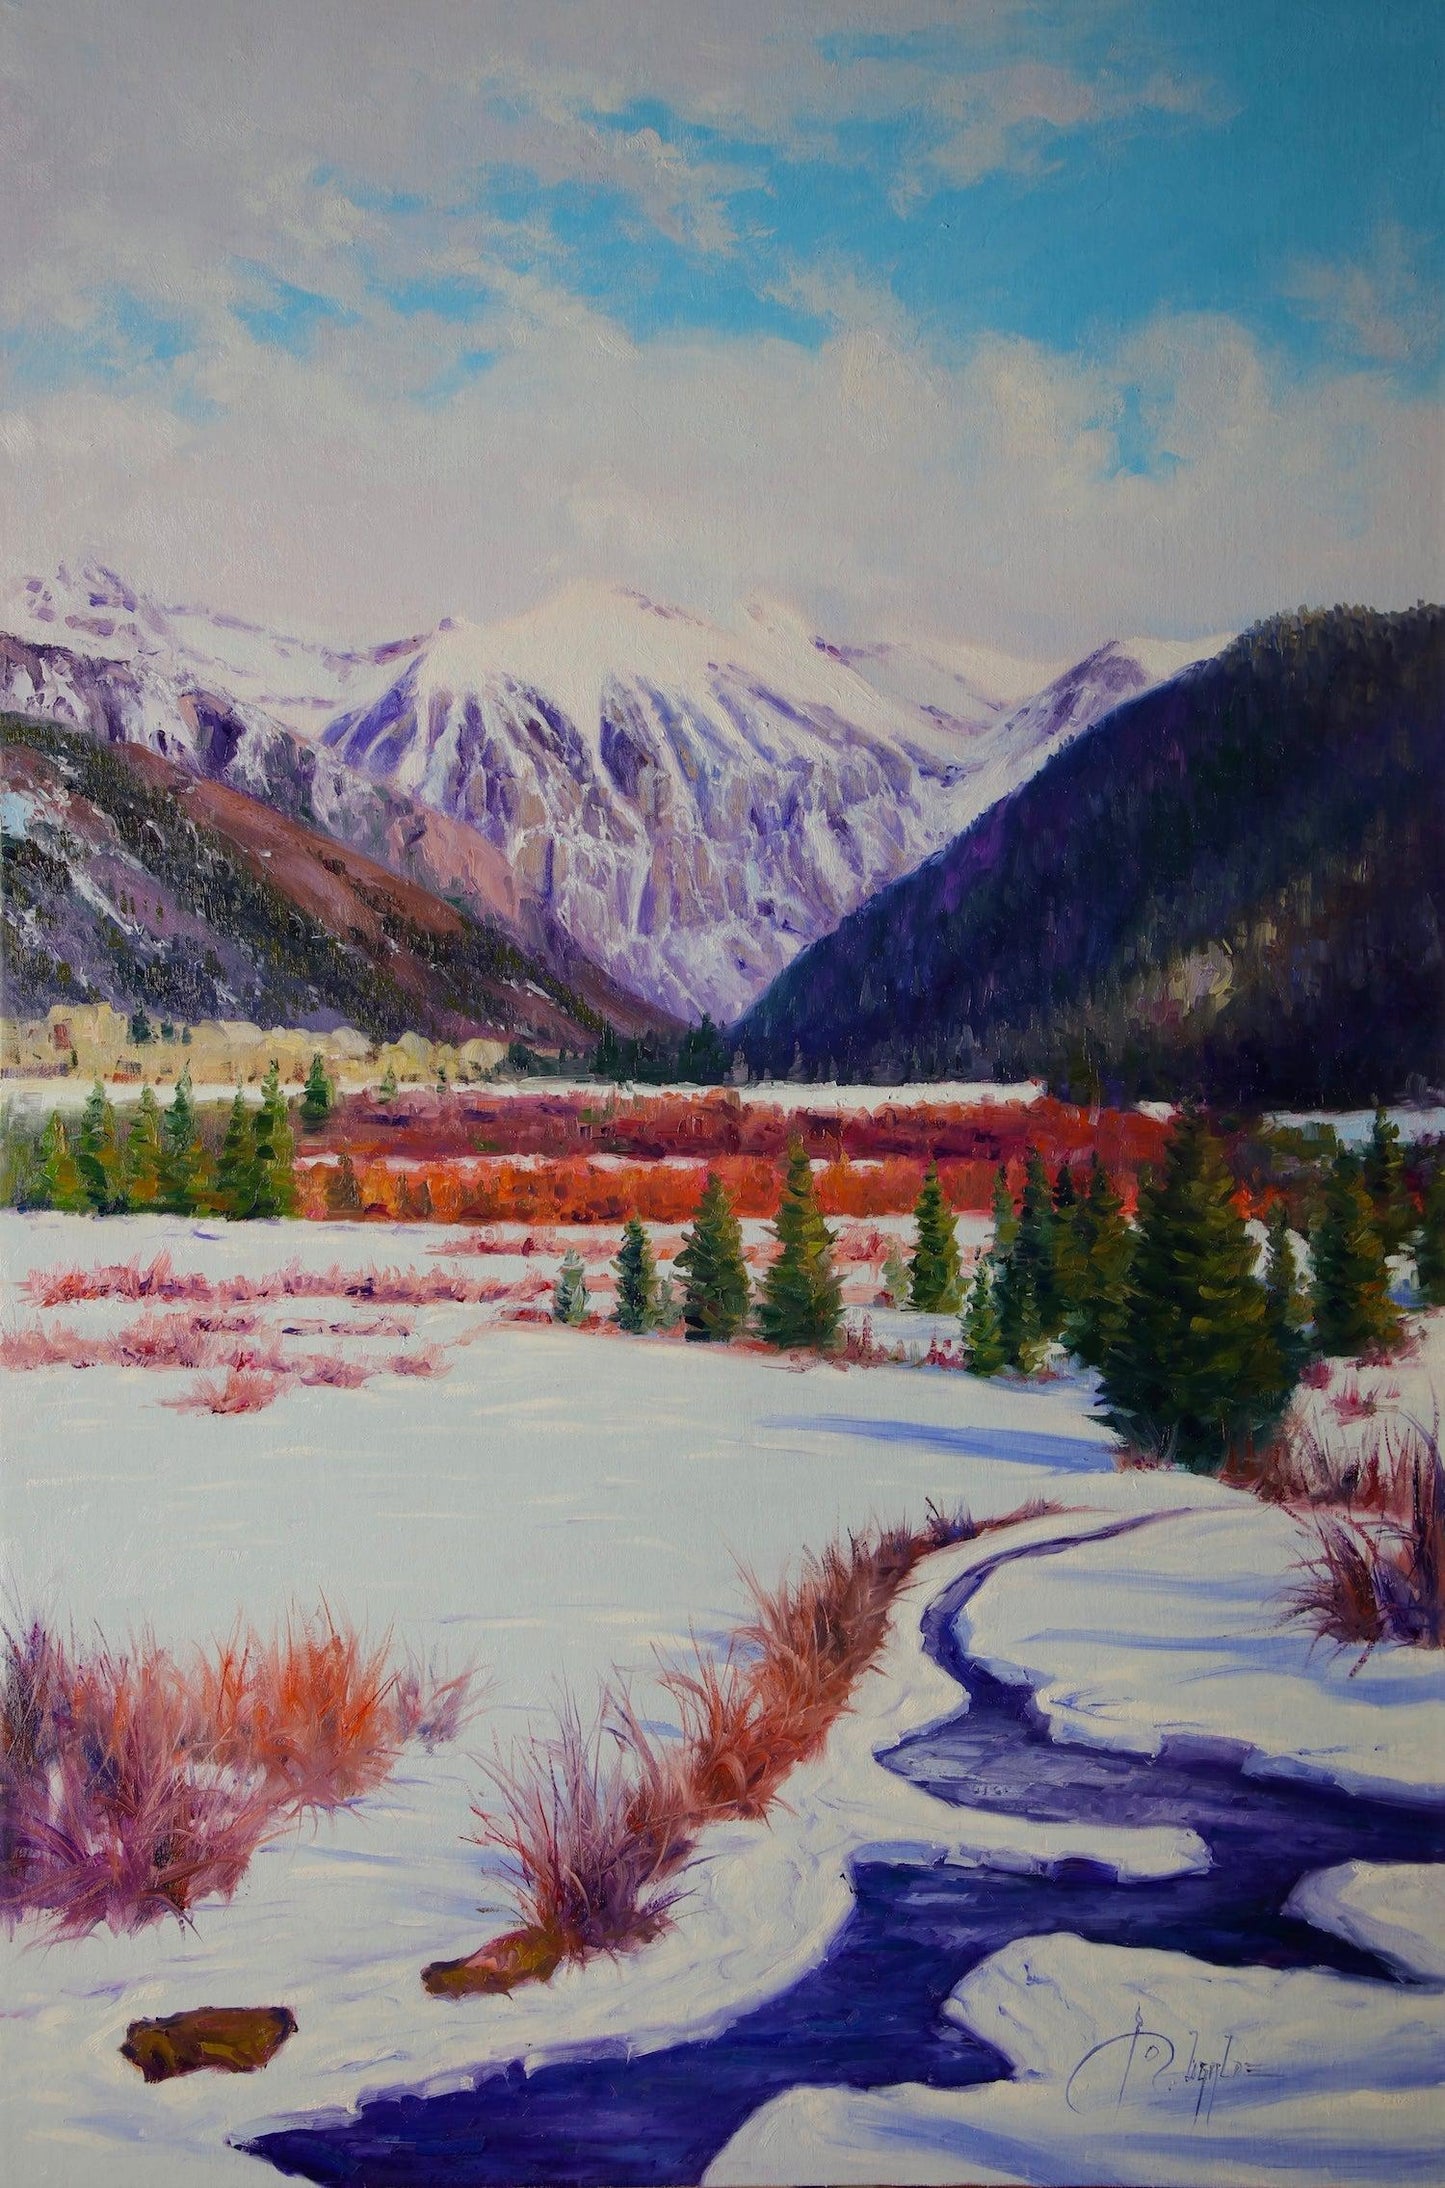 Telluride Winter-Painting-Roberto Ugalde-Sorrel Sky Gallery